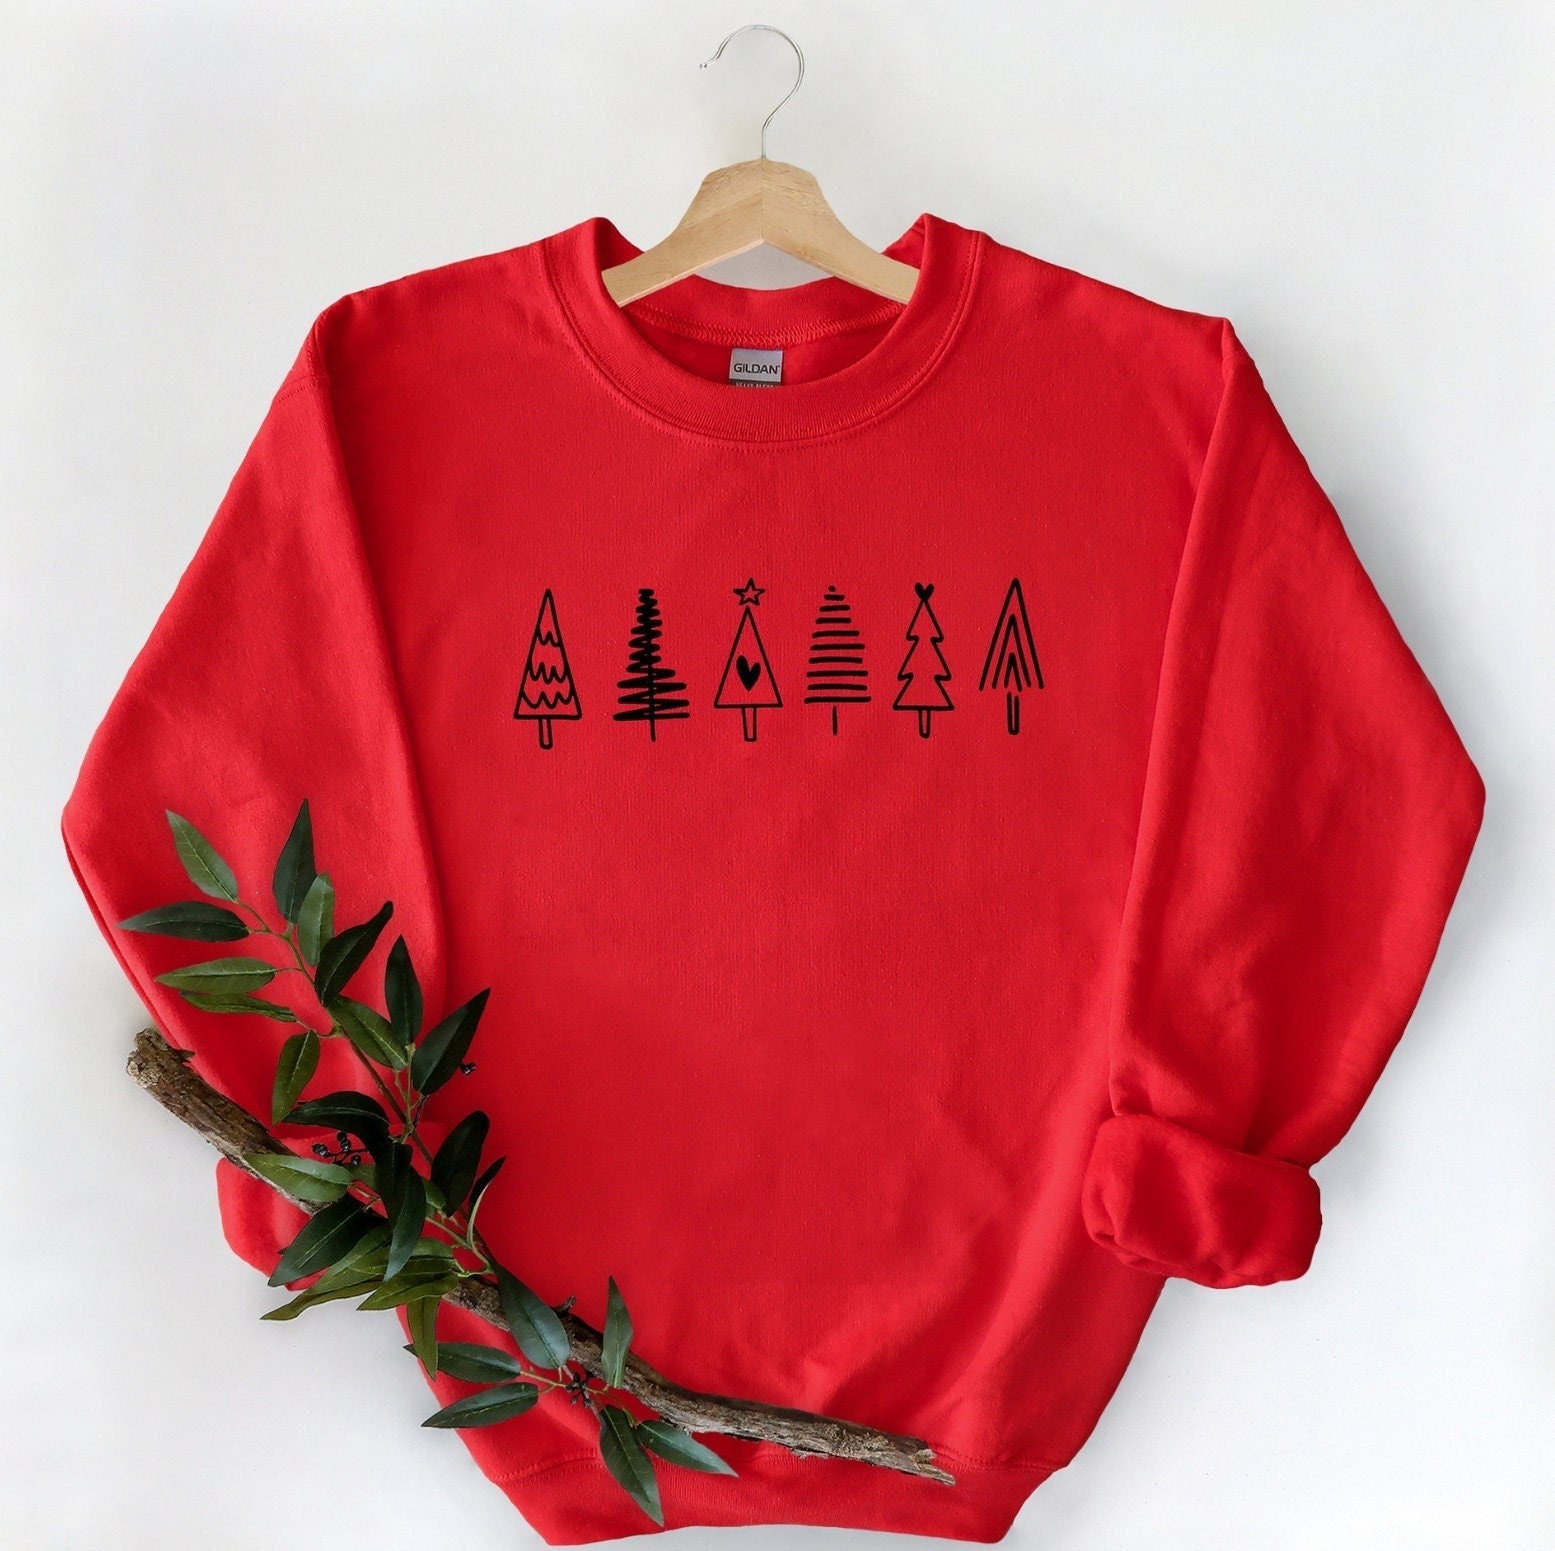 Weihnachtsbaum Sweatshirt, Weihnachtsshirt Für Frauen, Weihnachtspullover, Weihnachtsgeschenk Weihnachtsshirt, T-Shirt von ComfyShirtsUS